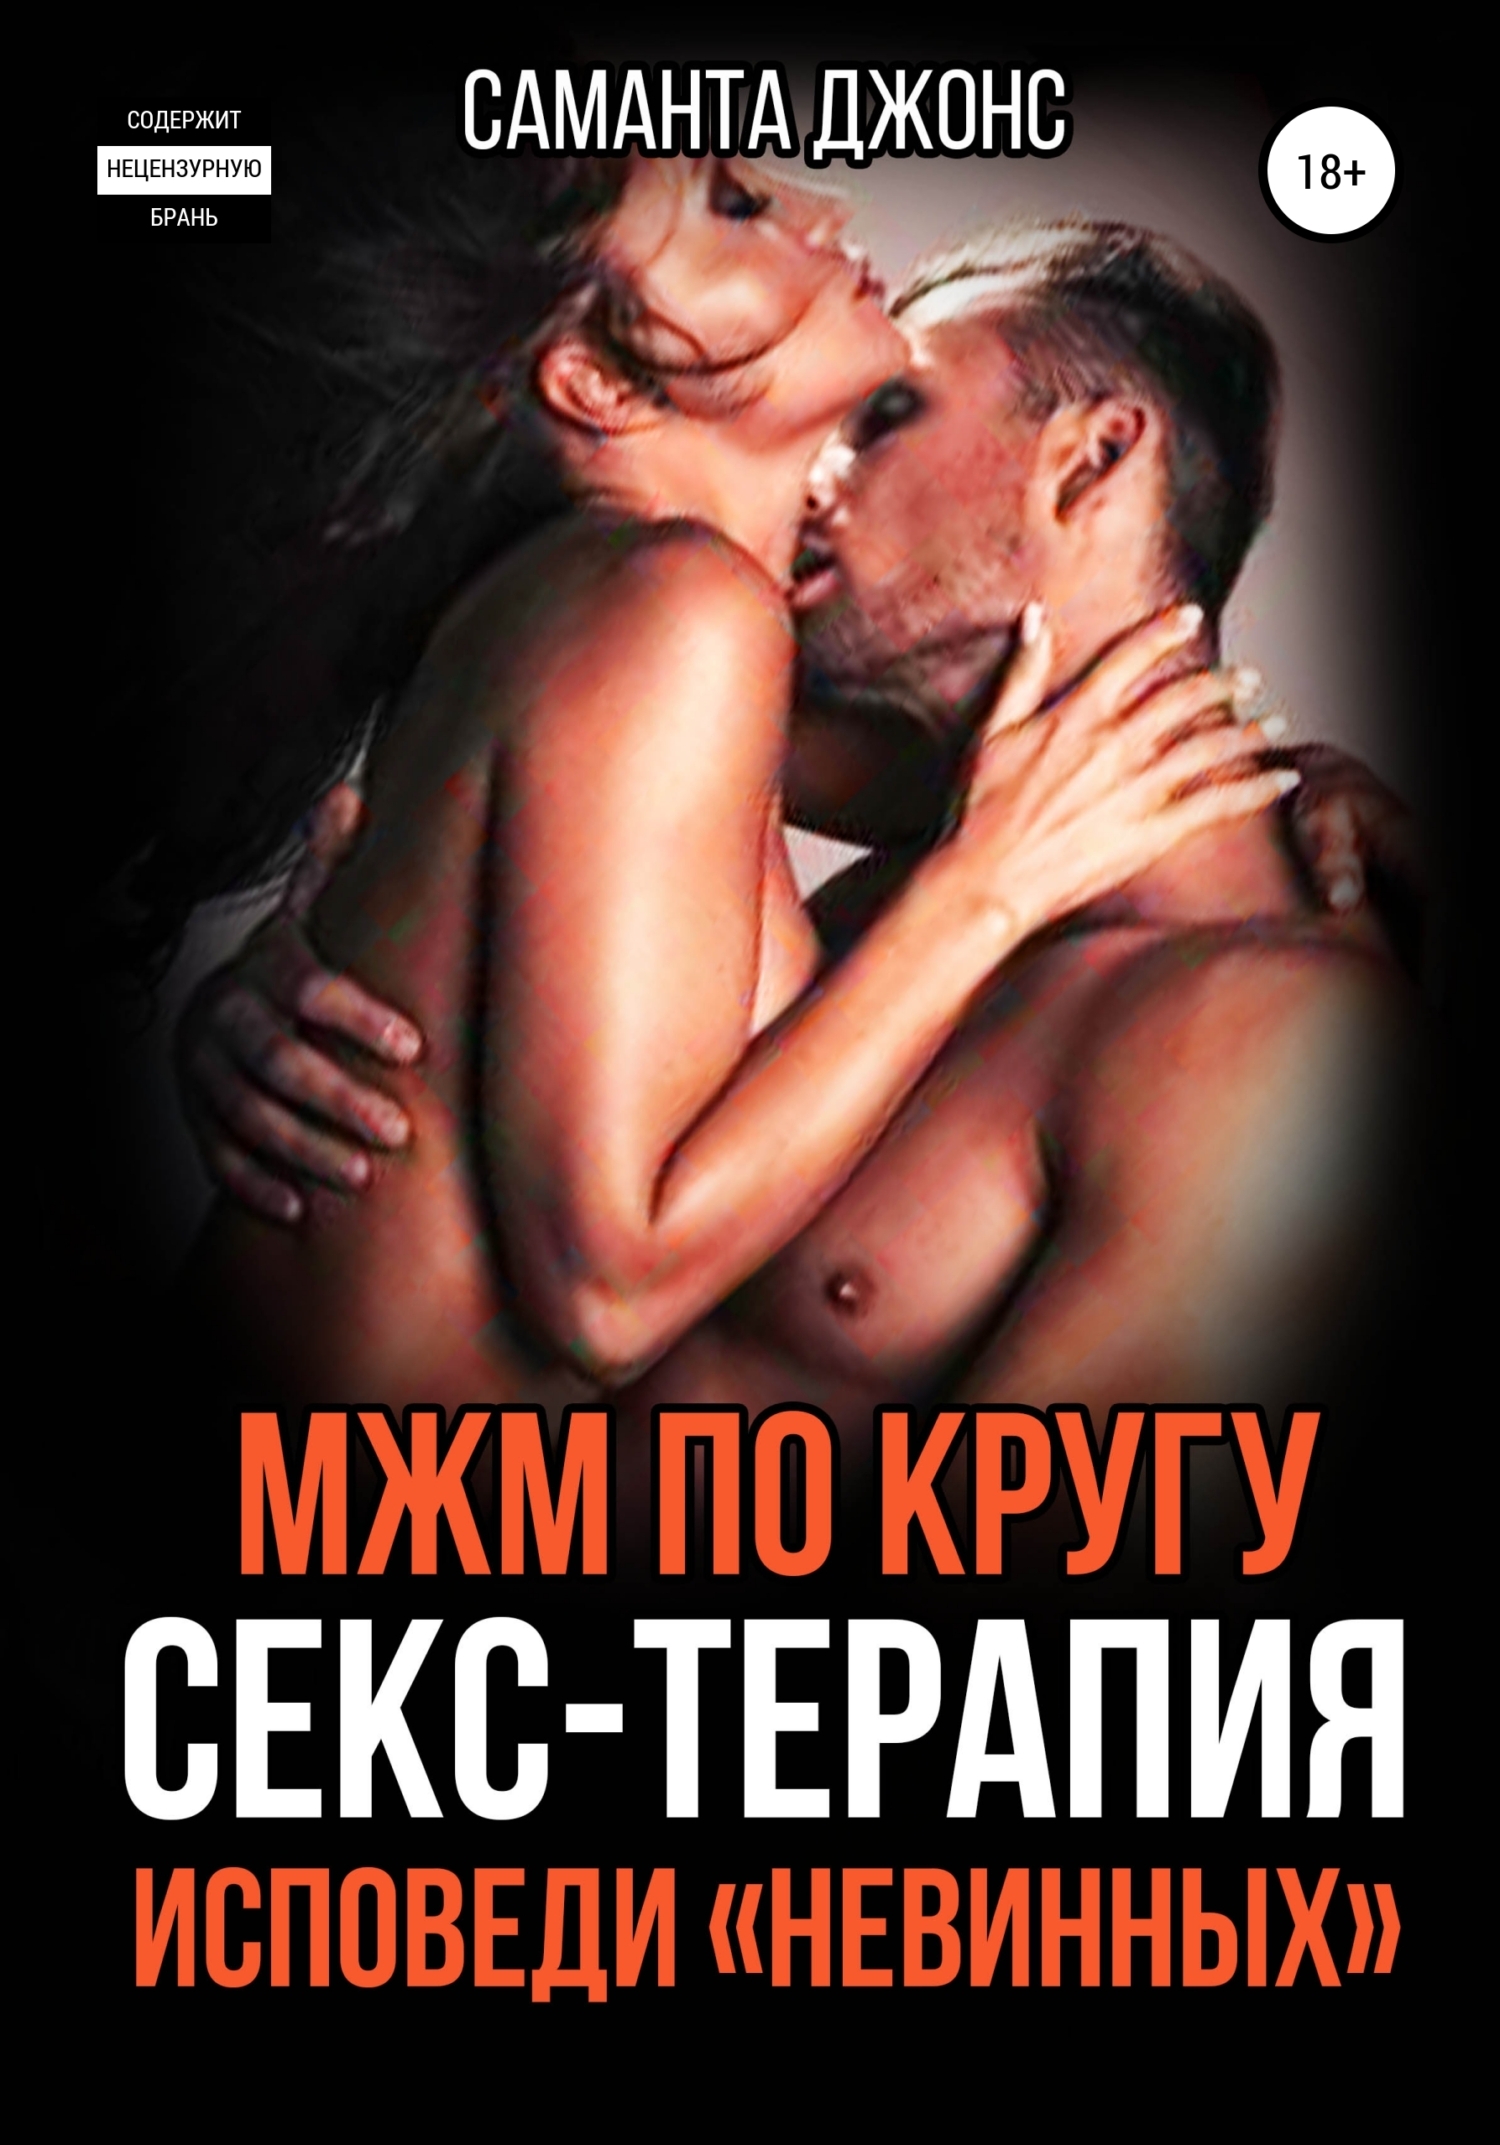 Русский секс да да еще еще ⭐️ смотреть онлайн порно видео